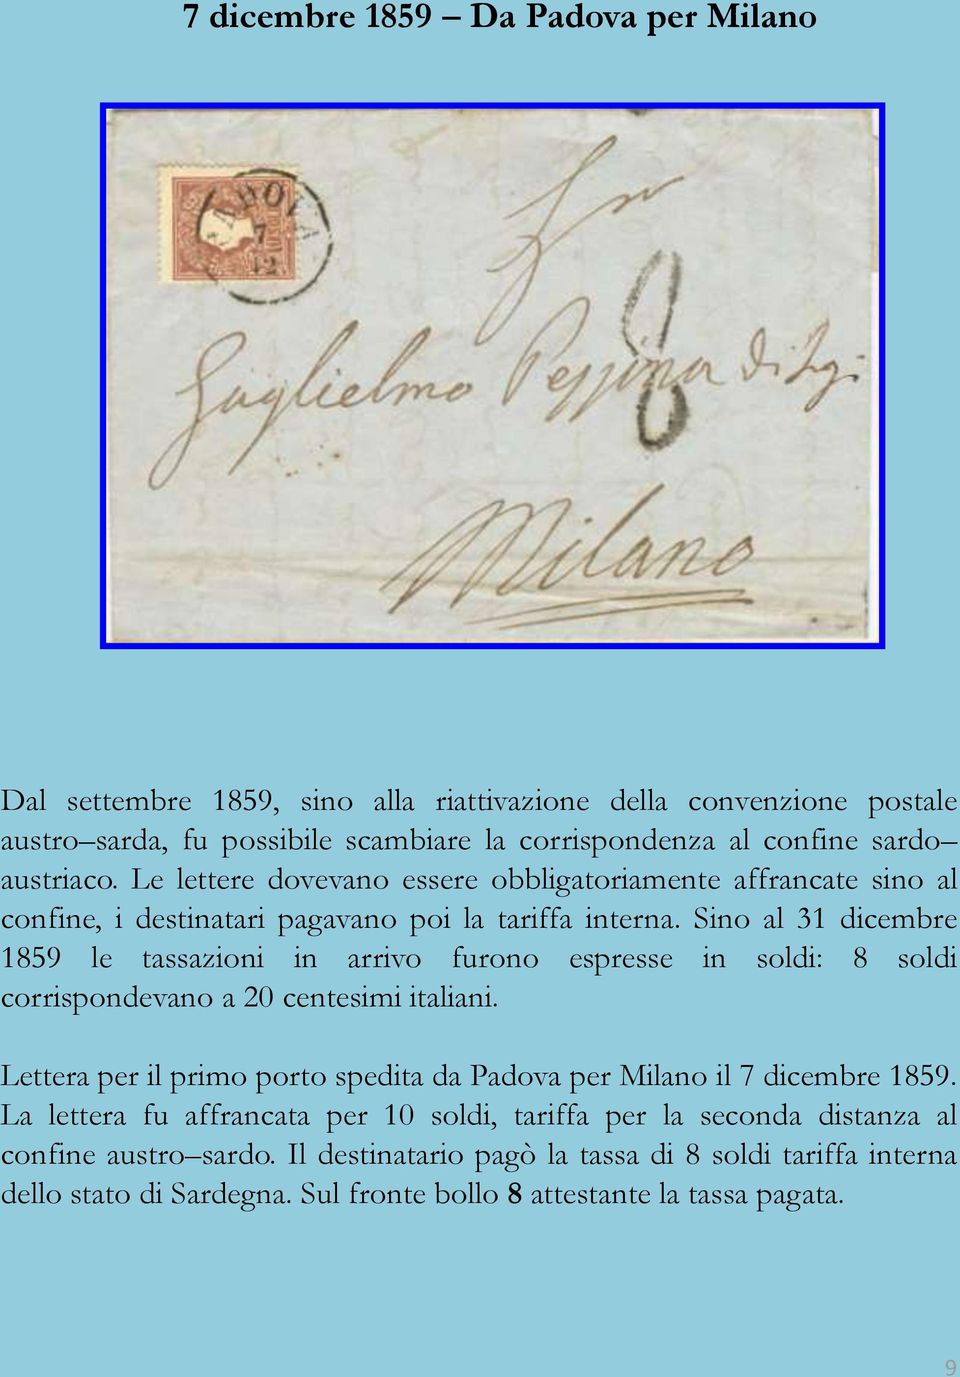 Sino al 31 dicembre 1859 le tassazioni in arrivo furono espresse in soldi: 8 soldi corrispondevano a 20 centesimi italiani.